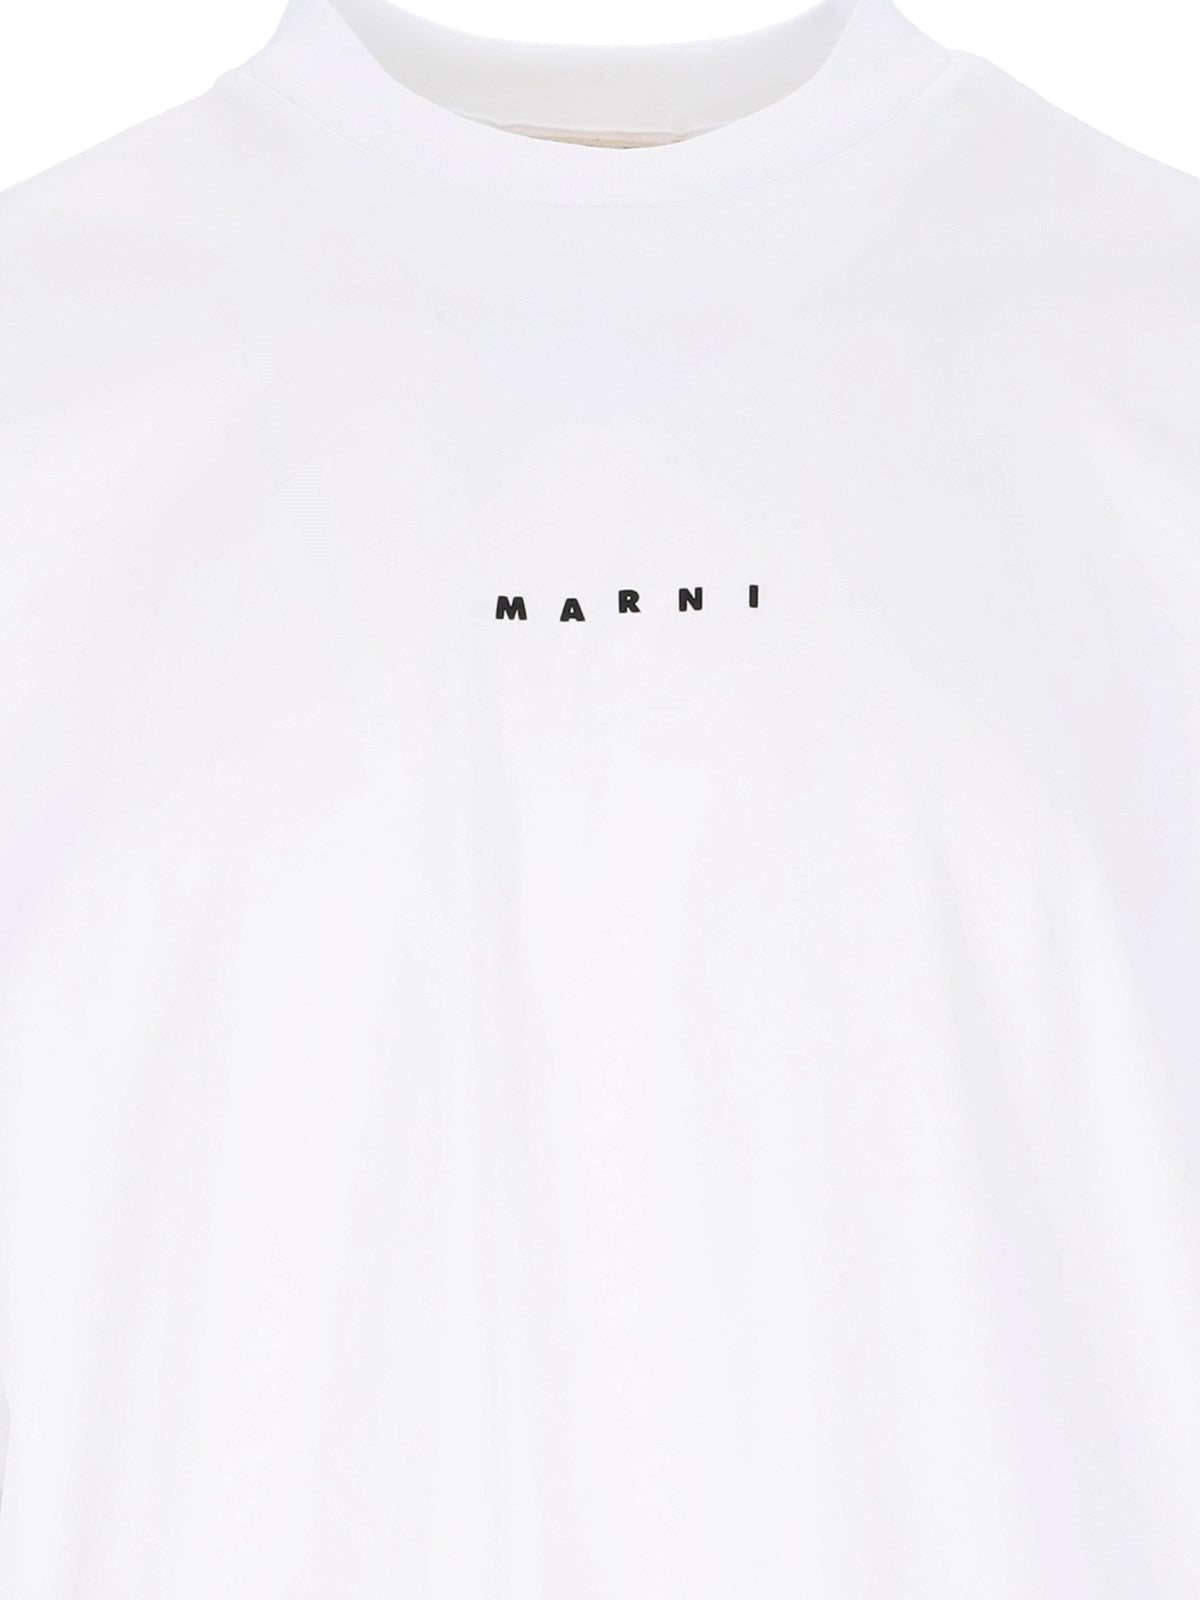 Marni T-Shirt logo-t-shirt-Marni-T-shirt logo Marni - realizzata in cotone biologico - bianco, spalle scese, girocollo a costine, maniche corte, stampa logo nero fronte, orlo dritto.-Dresso